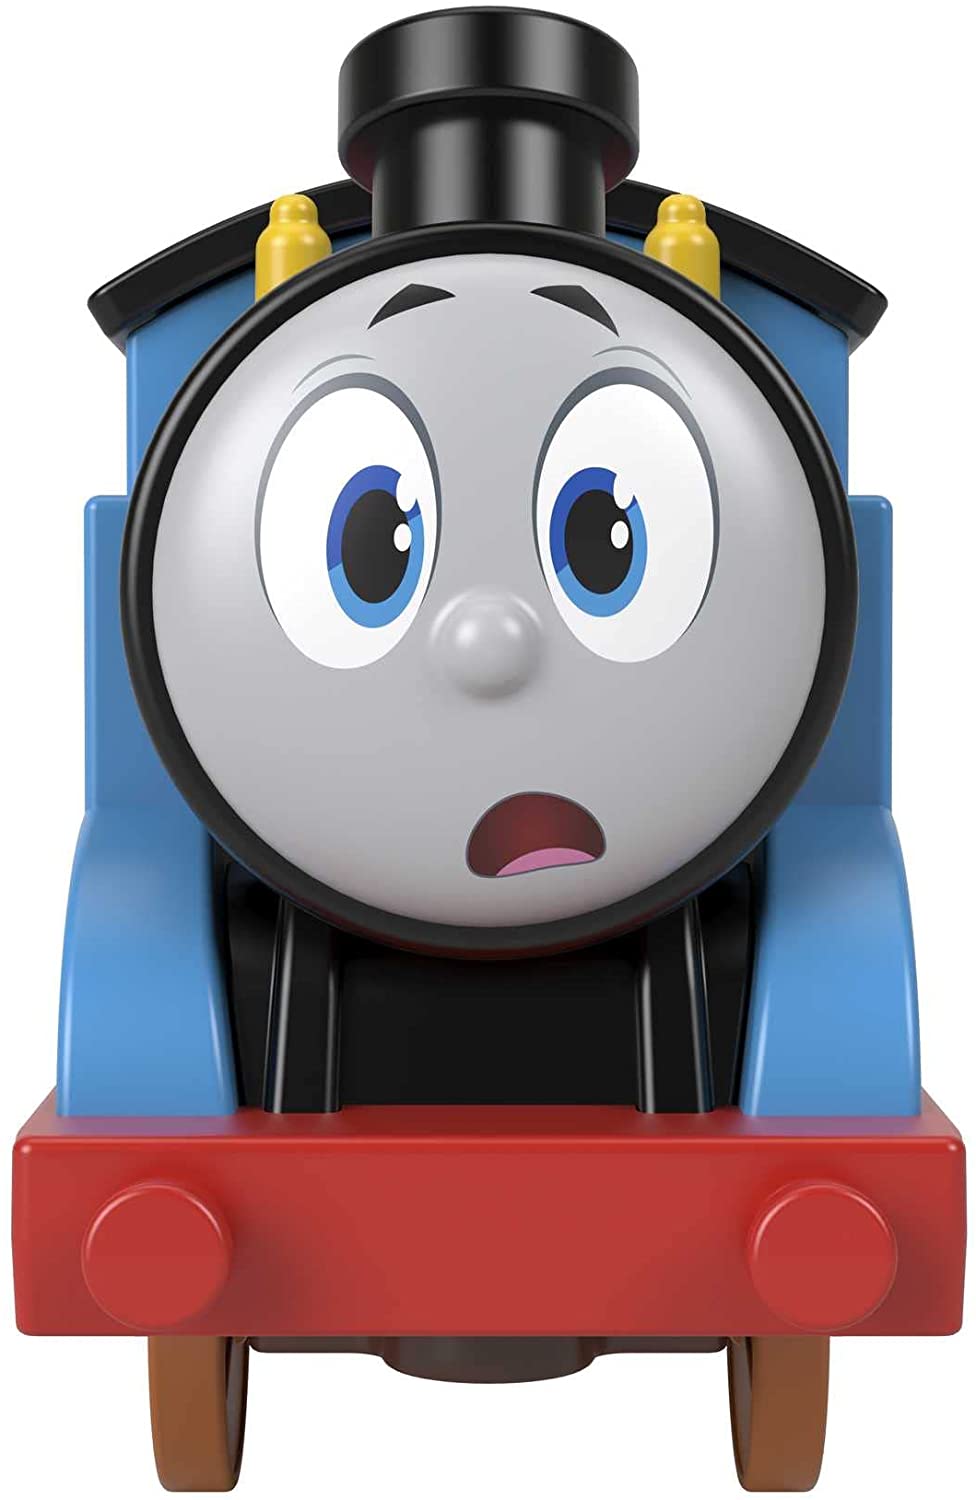 Thomas und seine Freunde HDY73 Vorschulzüge und Eisenbahnsets, mehrfarbig